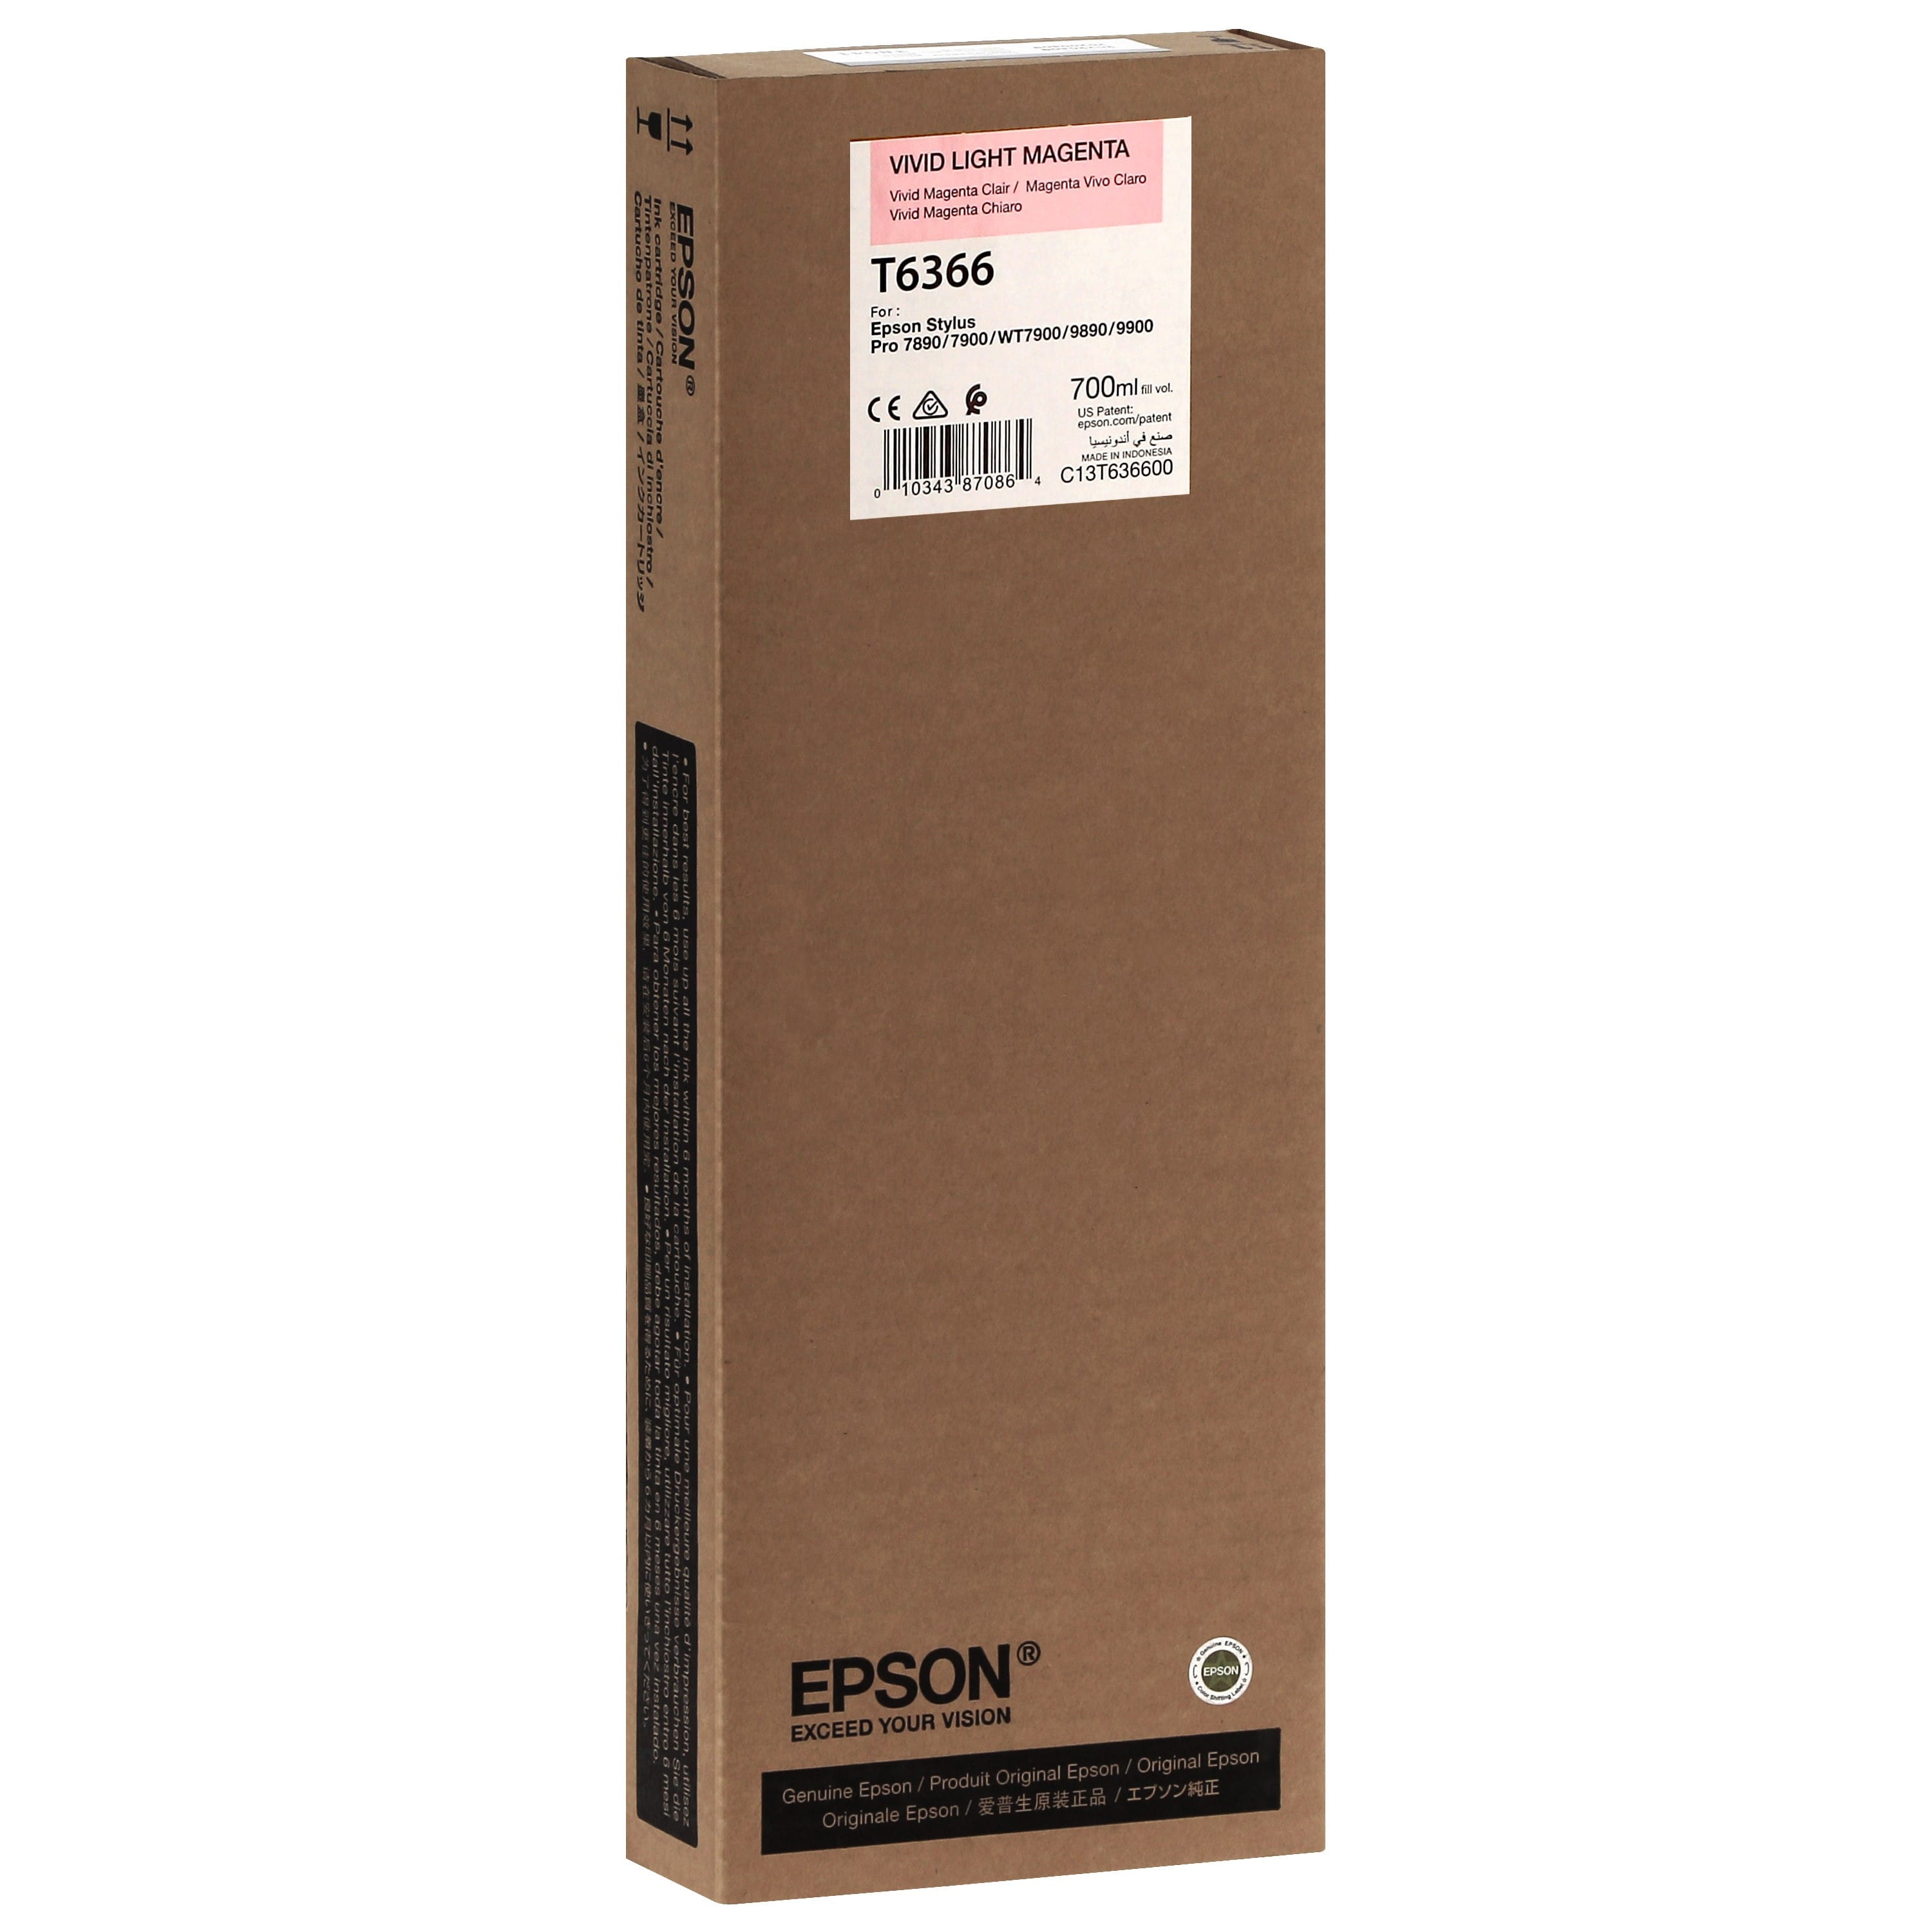 EPSON - Cartouche d'encre traceur T6366 Pour imprimante 7890/9890/7900/9900 Vivid Magenta clair - 700ml